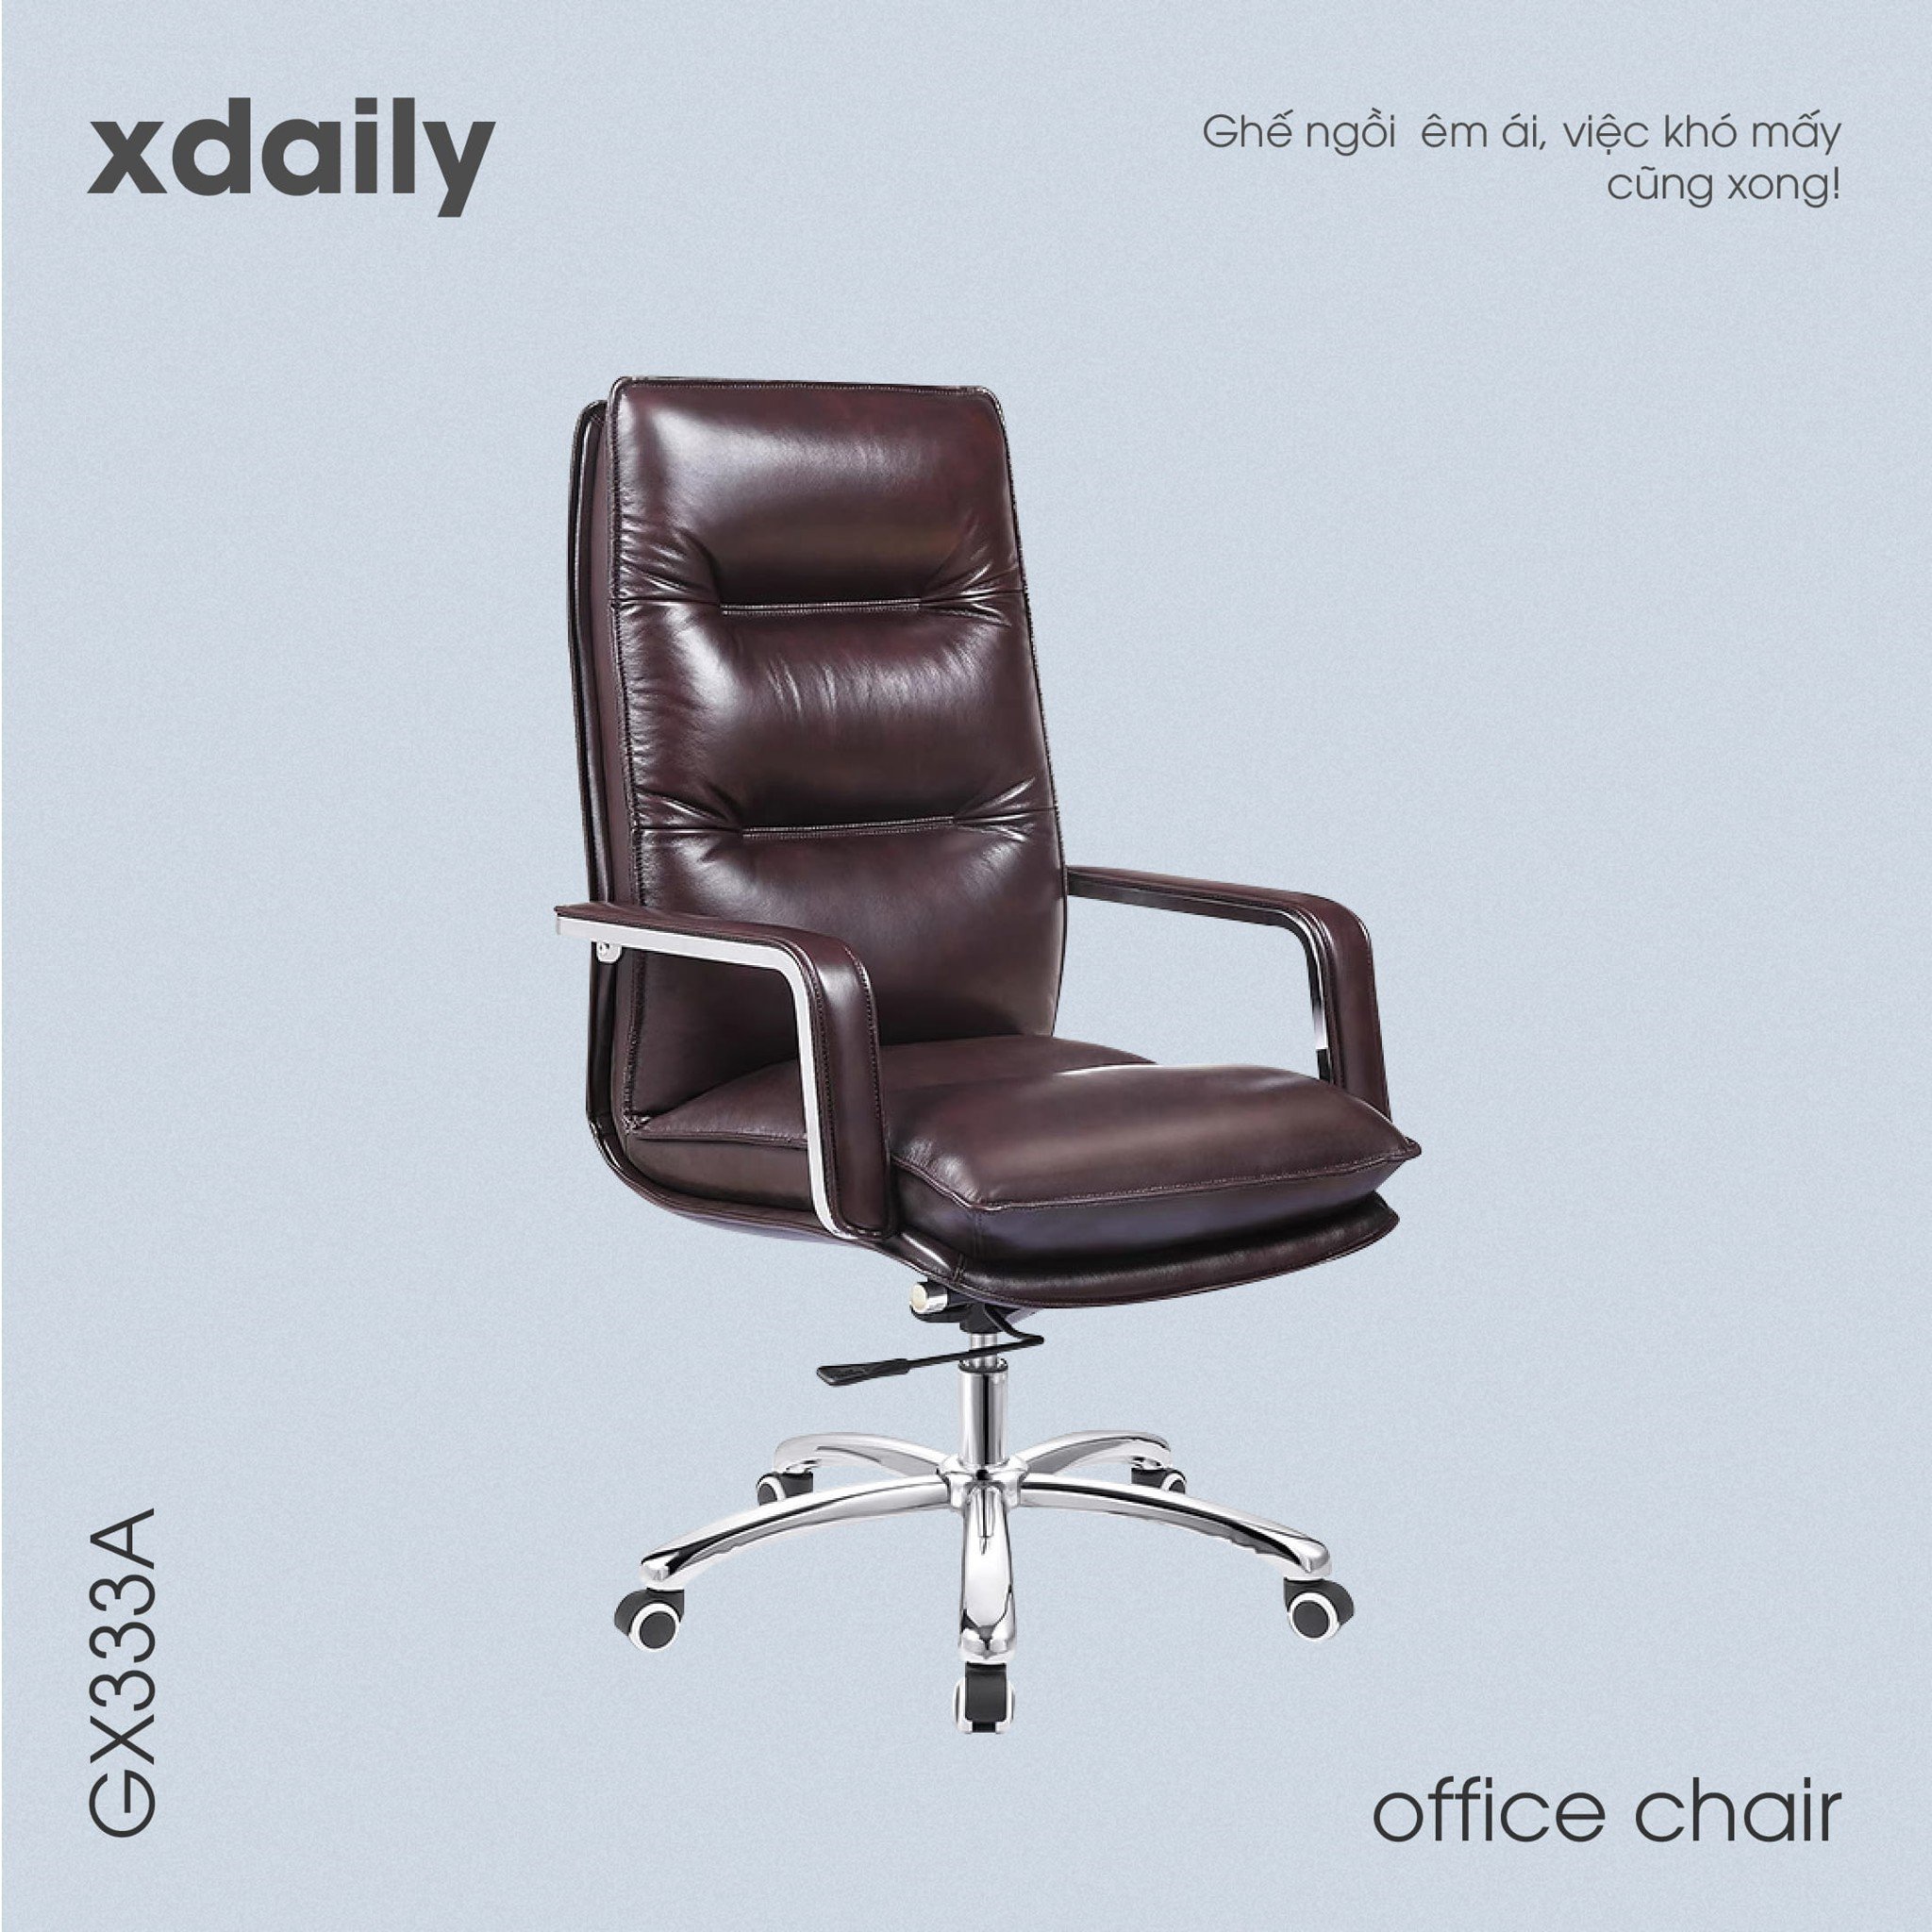 Ghế văn phòng - Giám đốc - Trưởng phòng - Xdaily GX333A